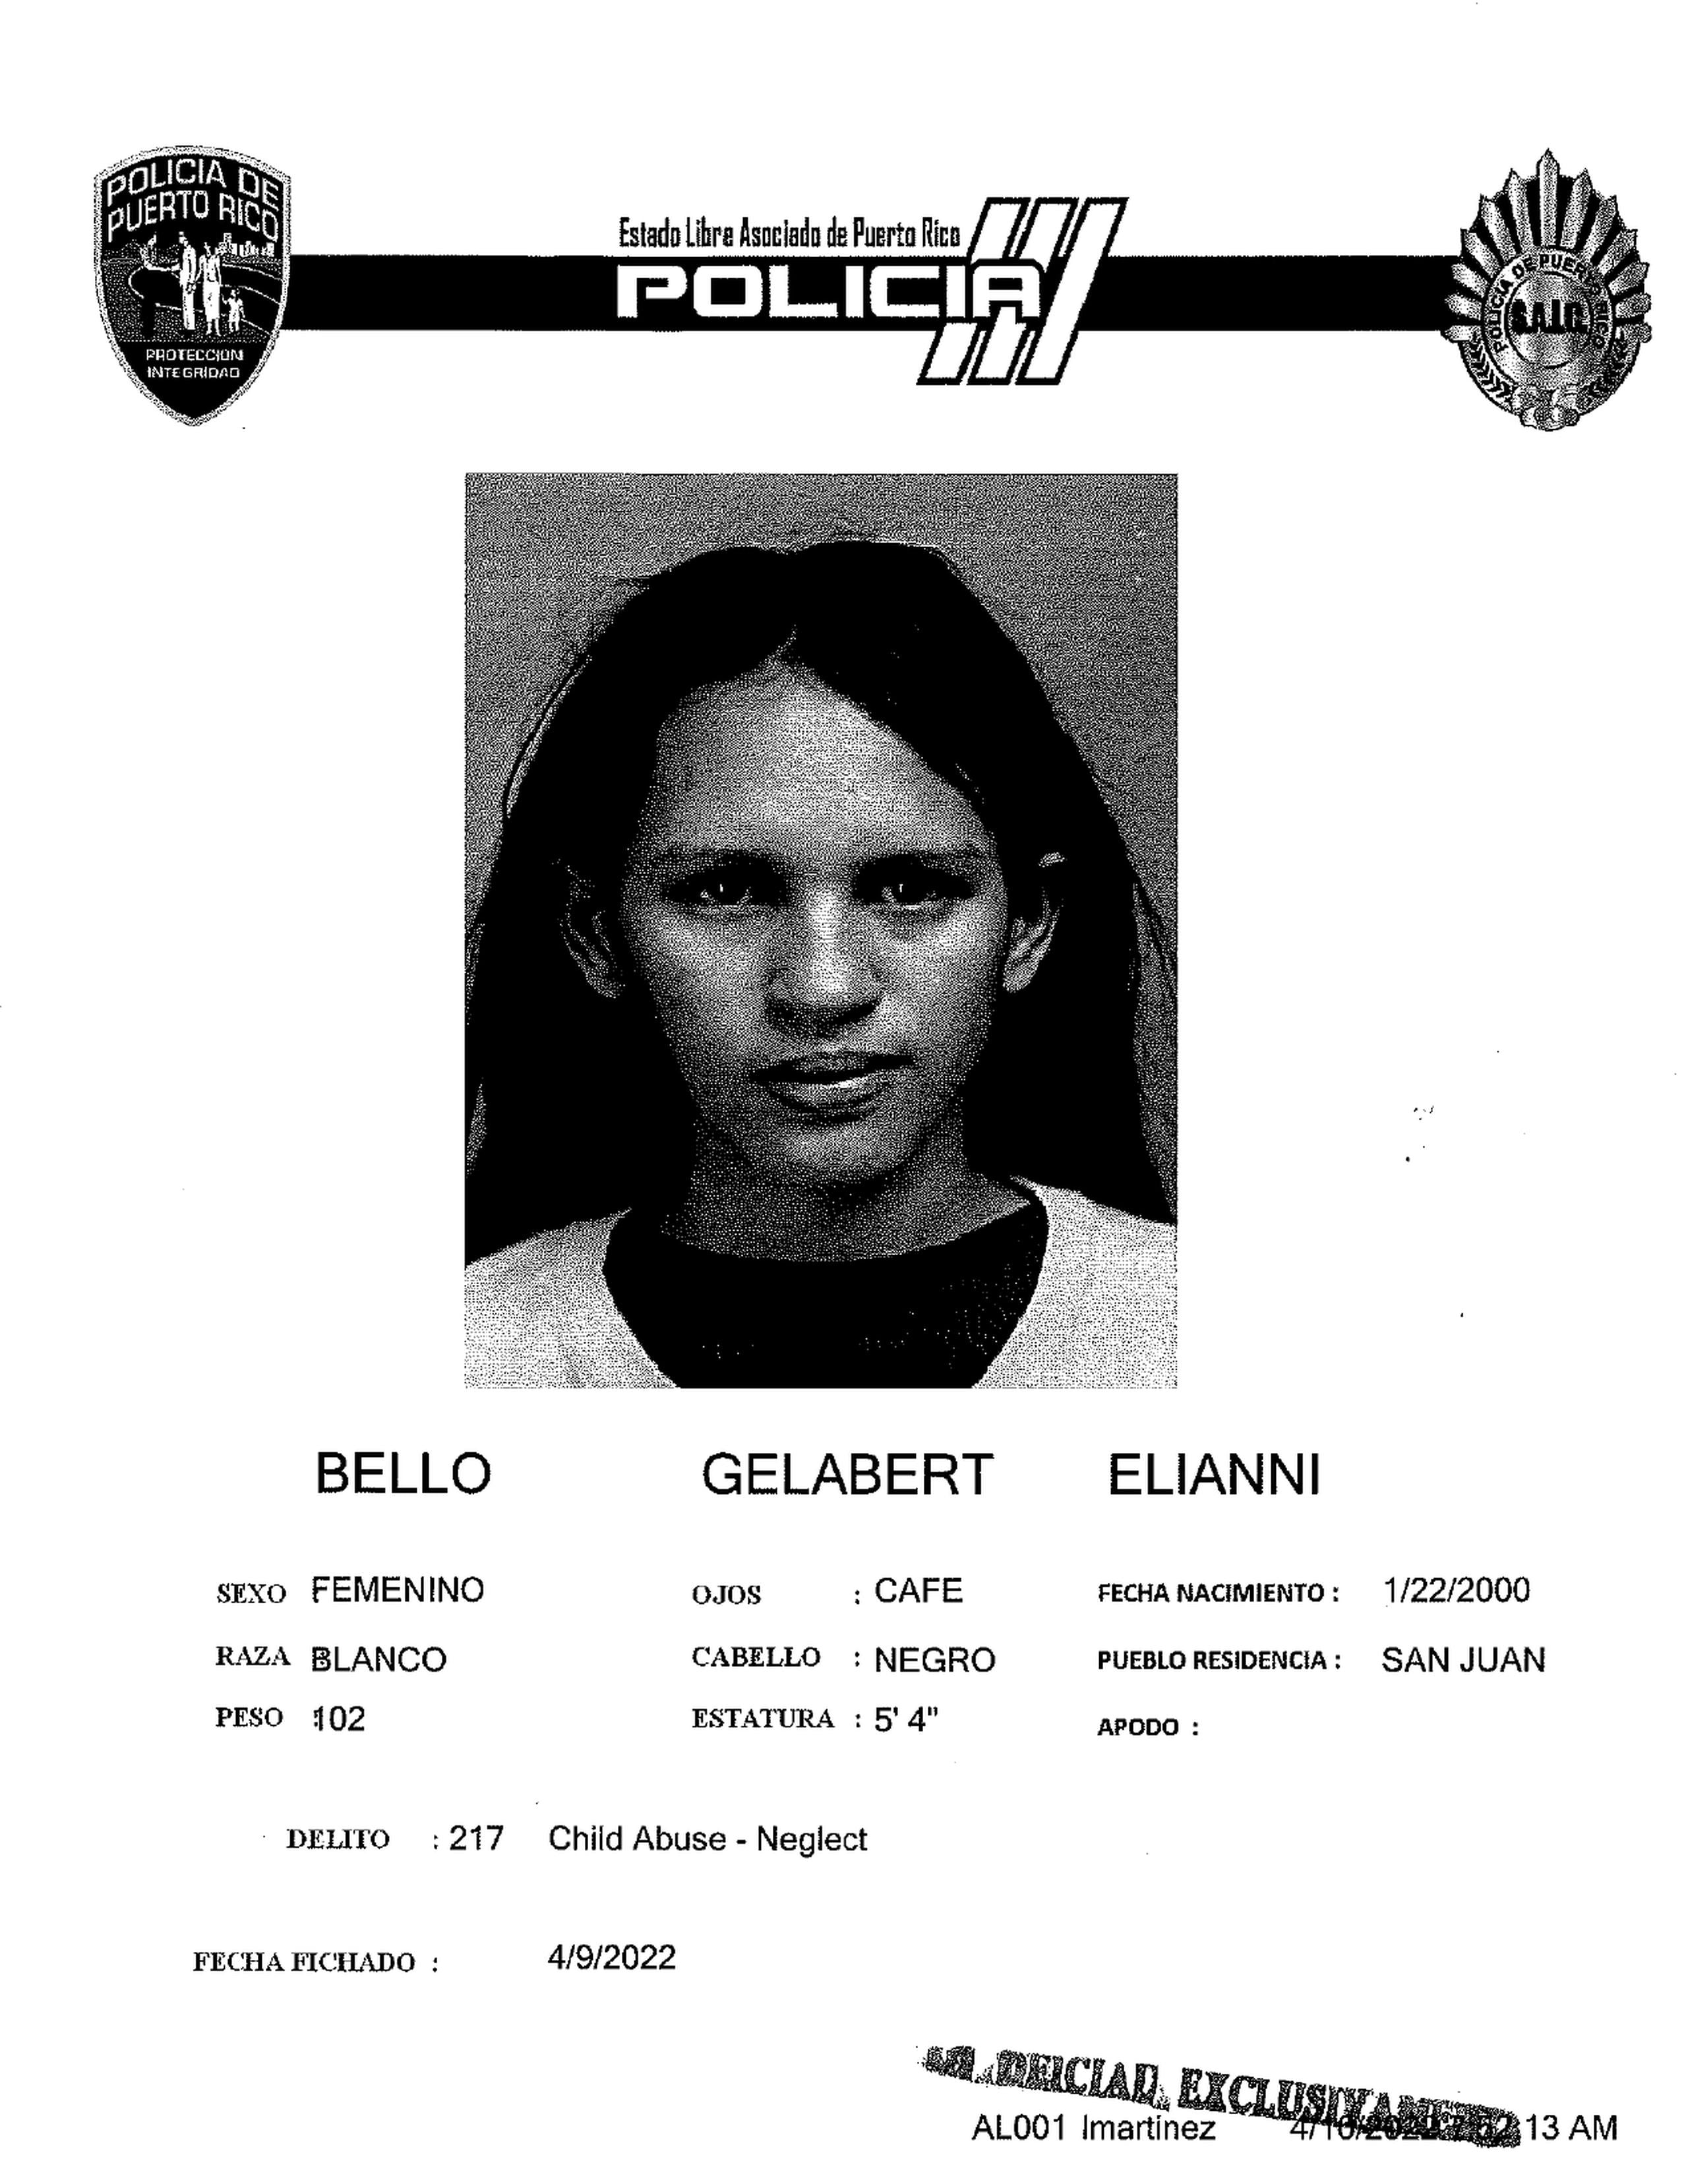 Elianni Bello Gelabert